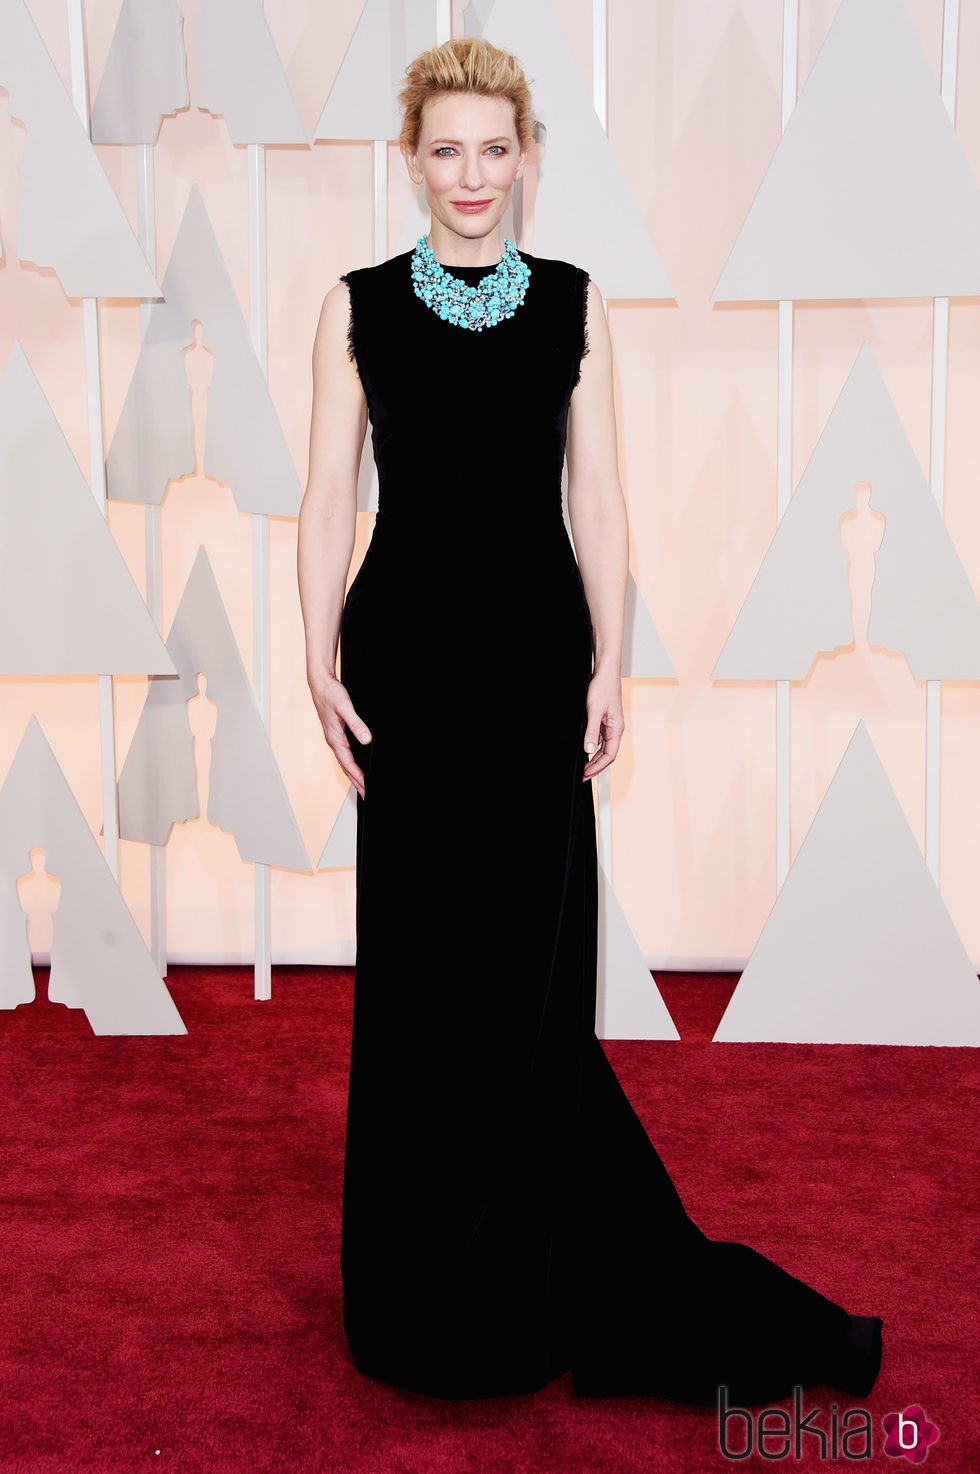 Cate Blanchett en la alfombra roja de los premios Oscar 2015